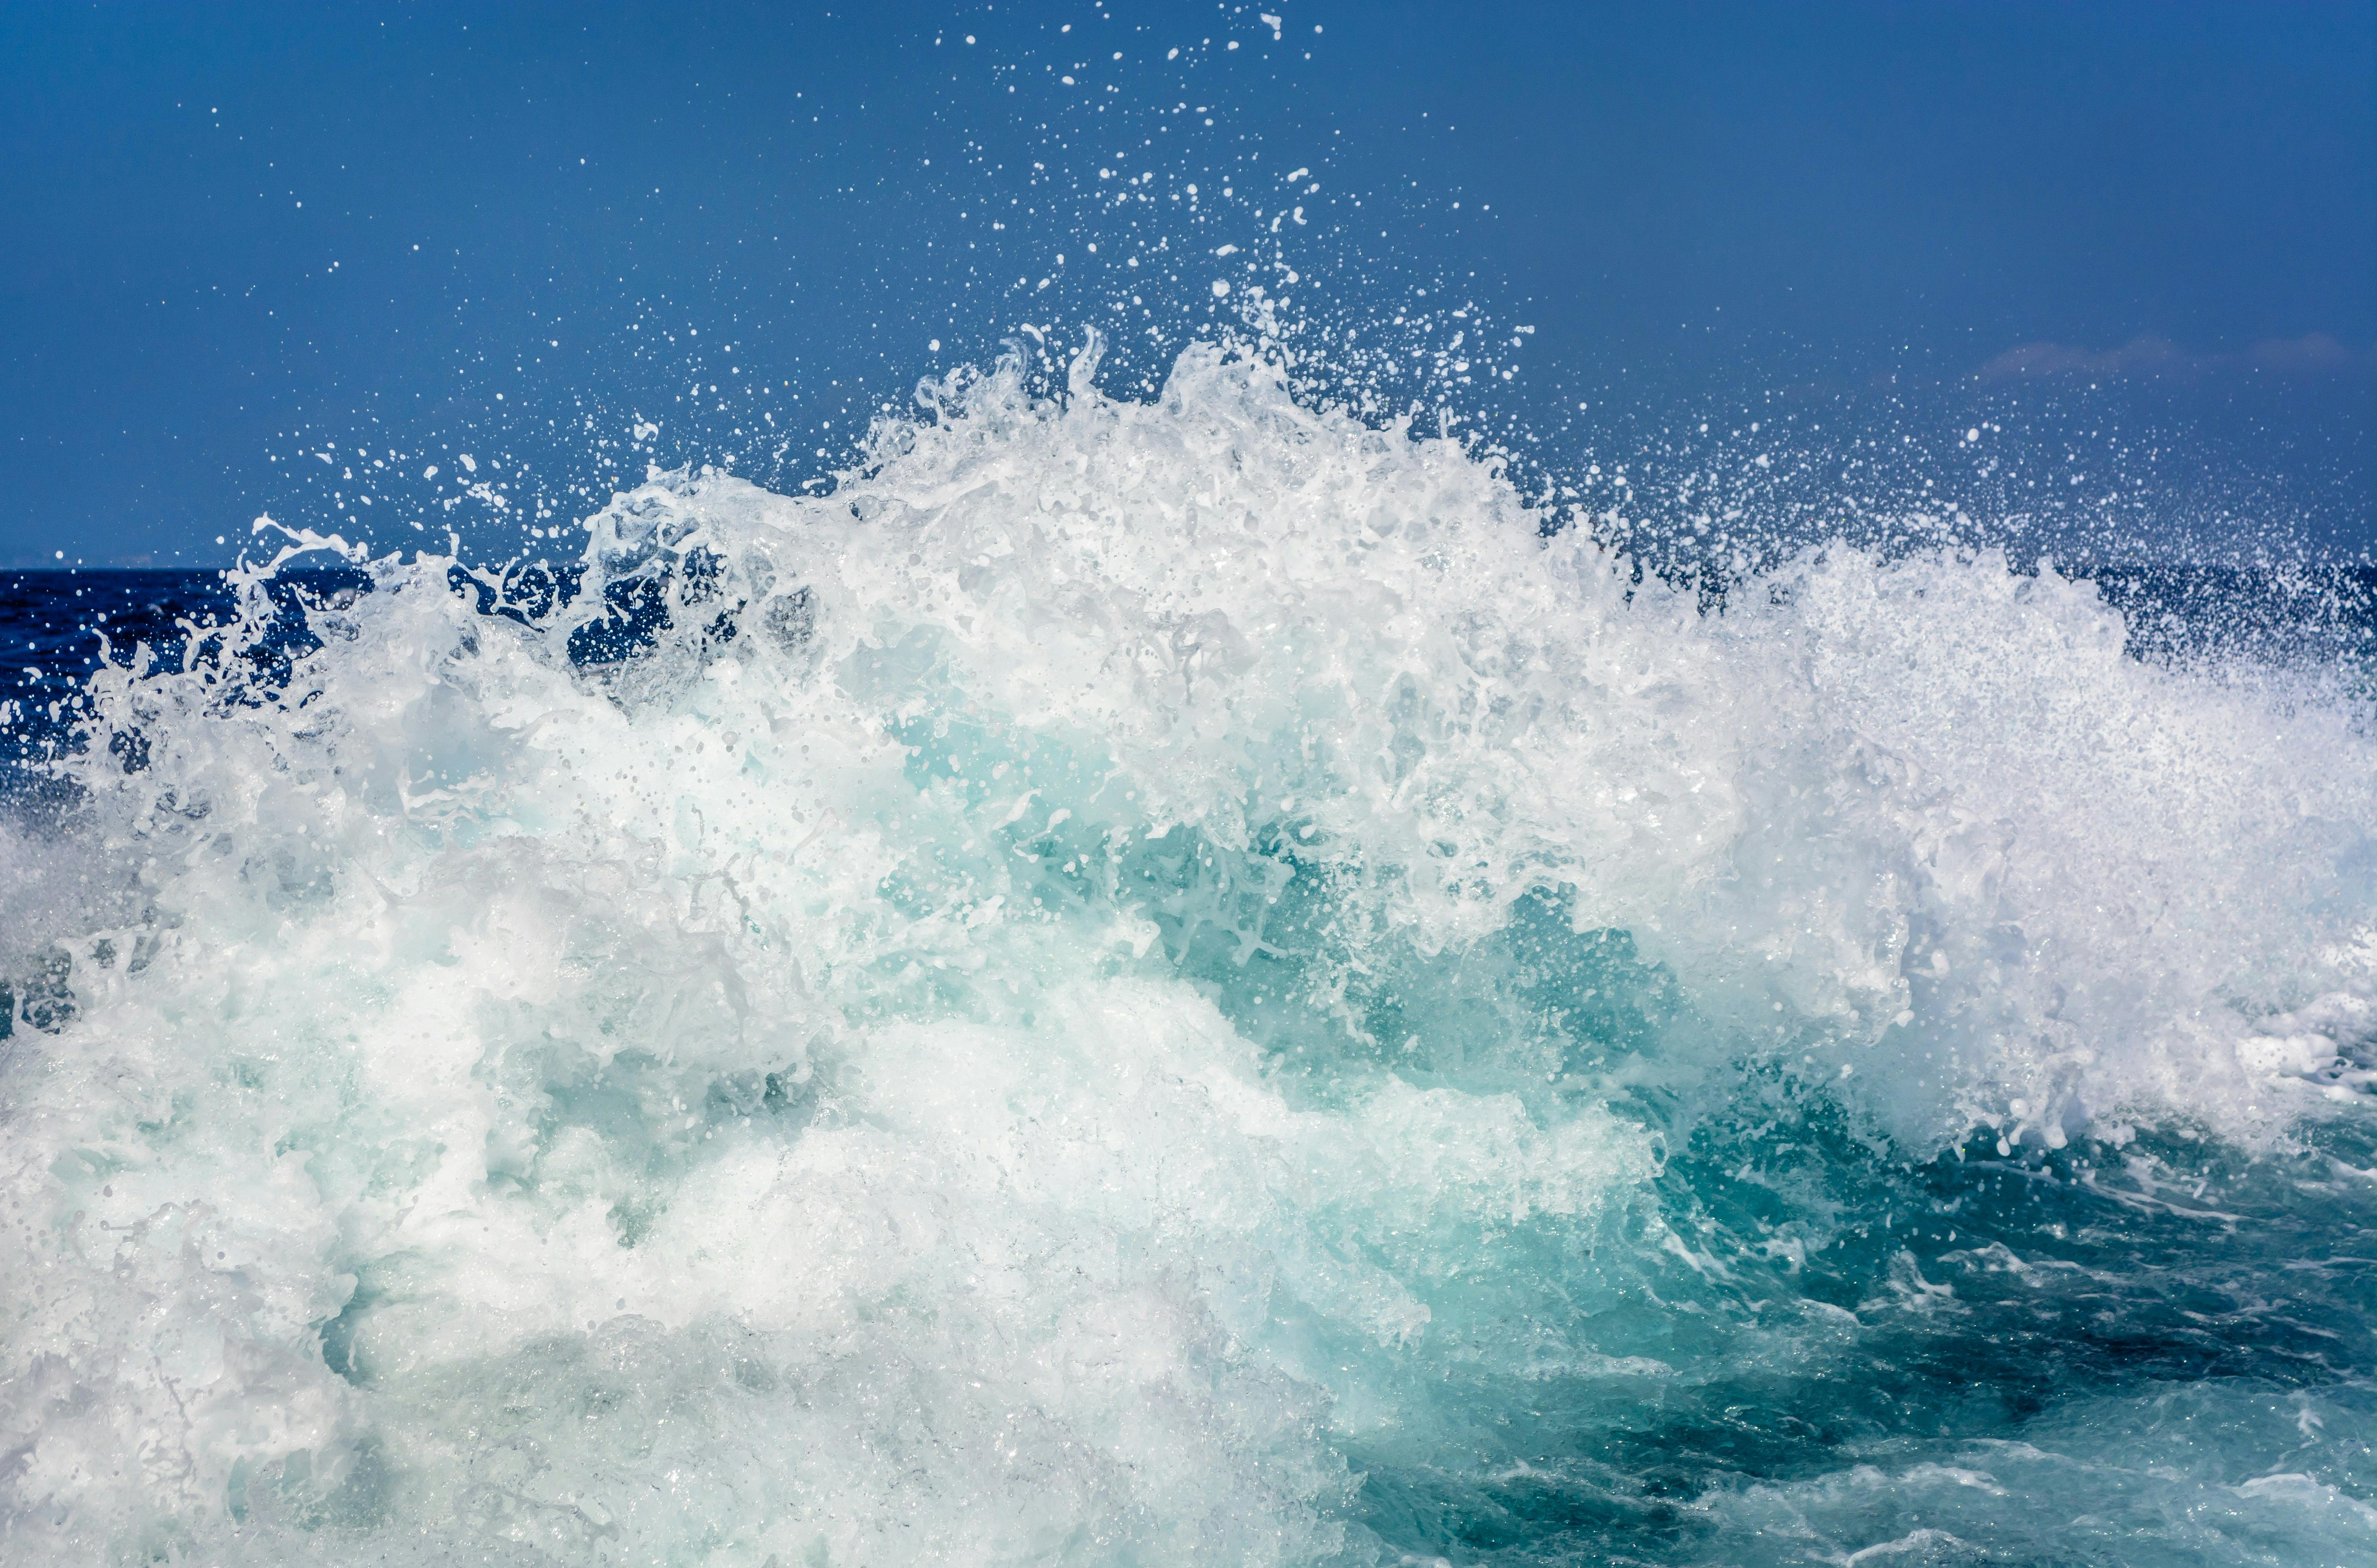 Ảnh về sóng biển miễn phí: Bạn đang tìm kiếm một tài nguyên các hình ảnh sóng biển miễn phí để sáng tạo và tưởng tượng cho công việc của mình? Ảnh về sóng biển miễn phí có độ phân giải cao sẽ mang đến cho bạn những khung cảnh độc đáo nhất bờ biển và giúp cho bạn tạo ra những tác phẩm nghệ thuật sáng tạo mà không phải tốn nhiều chi phí.